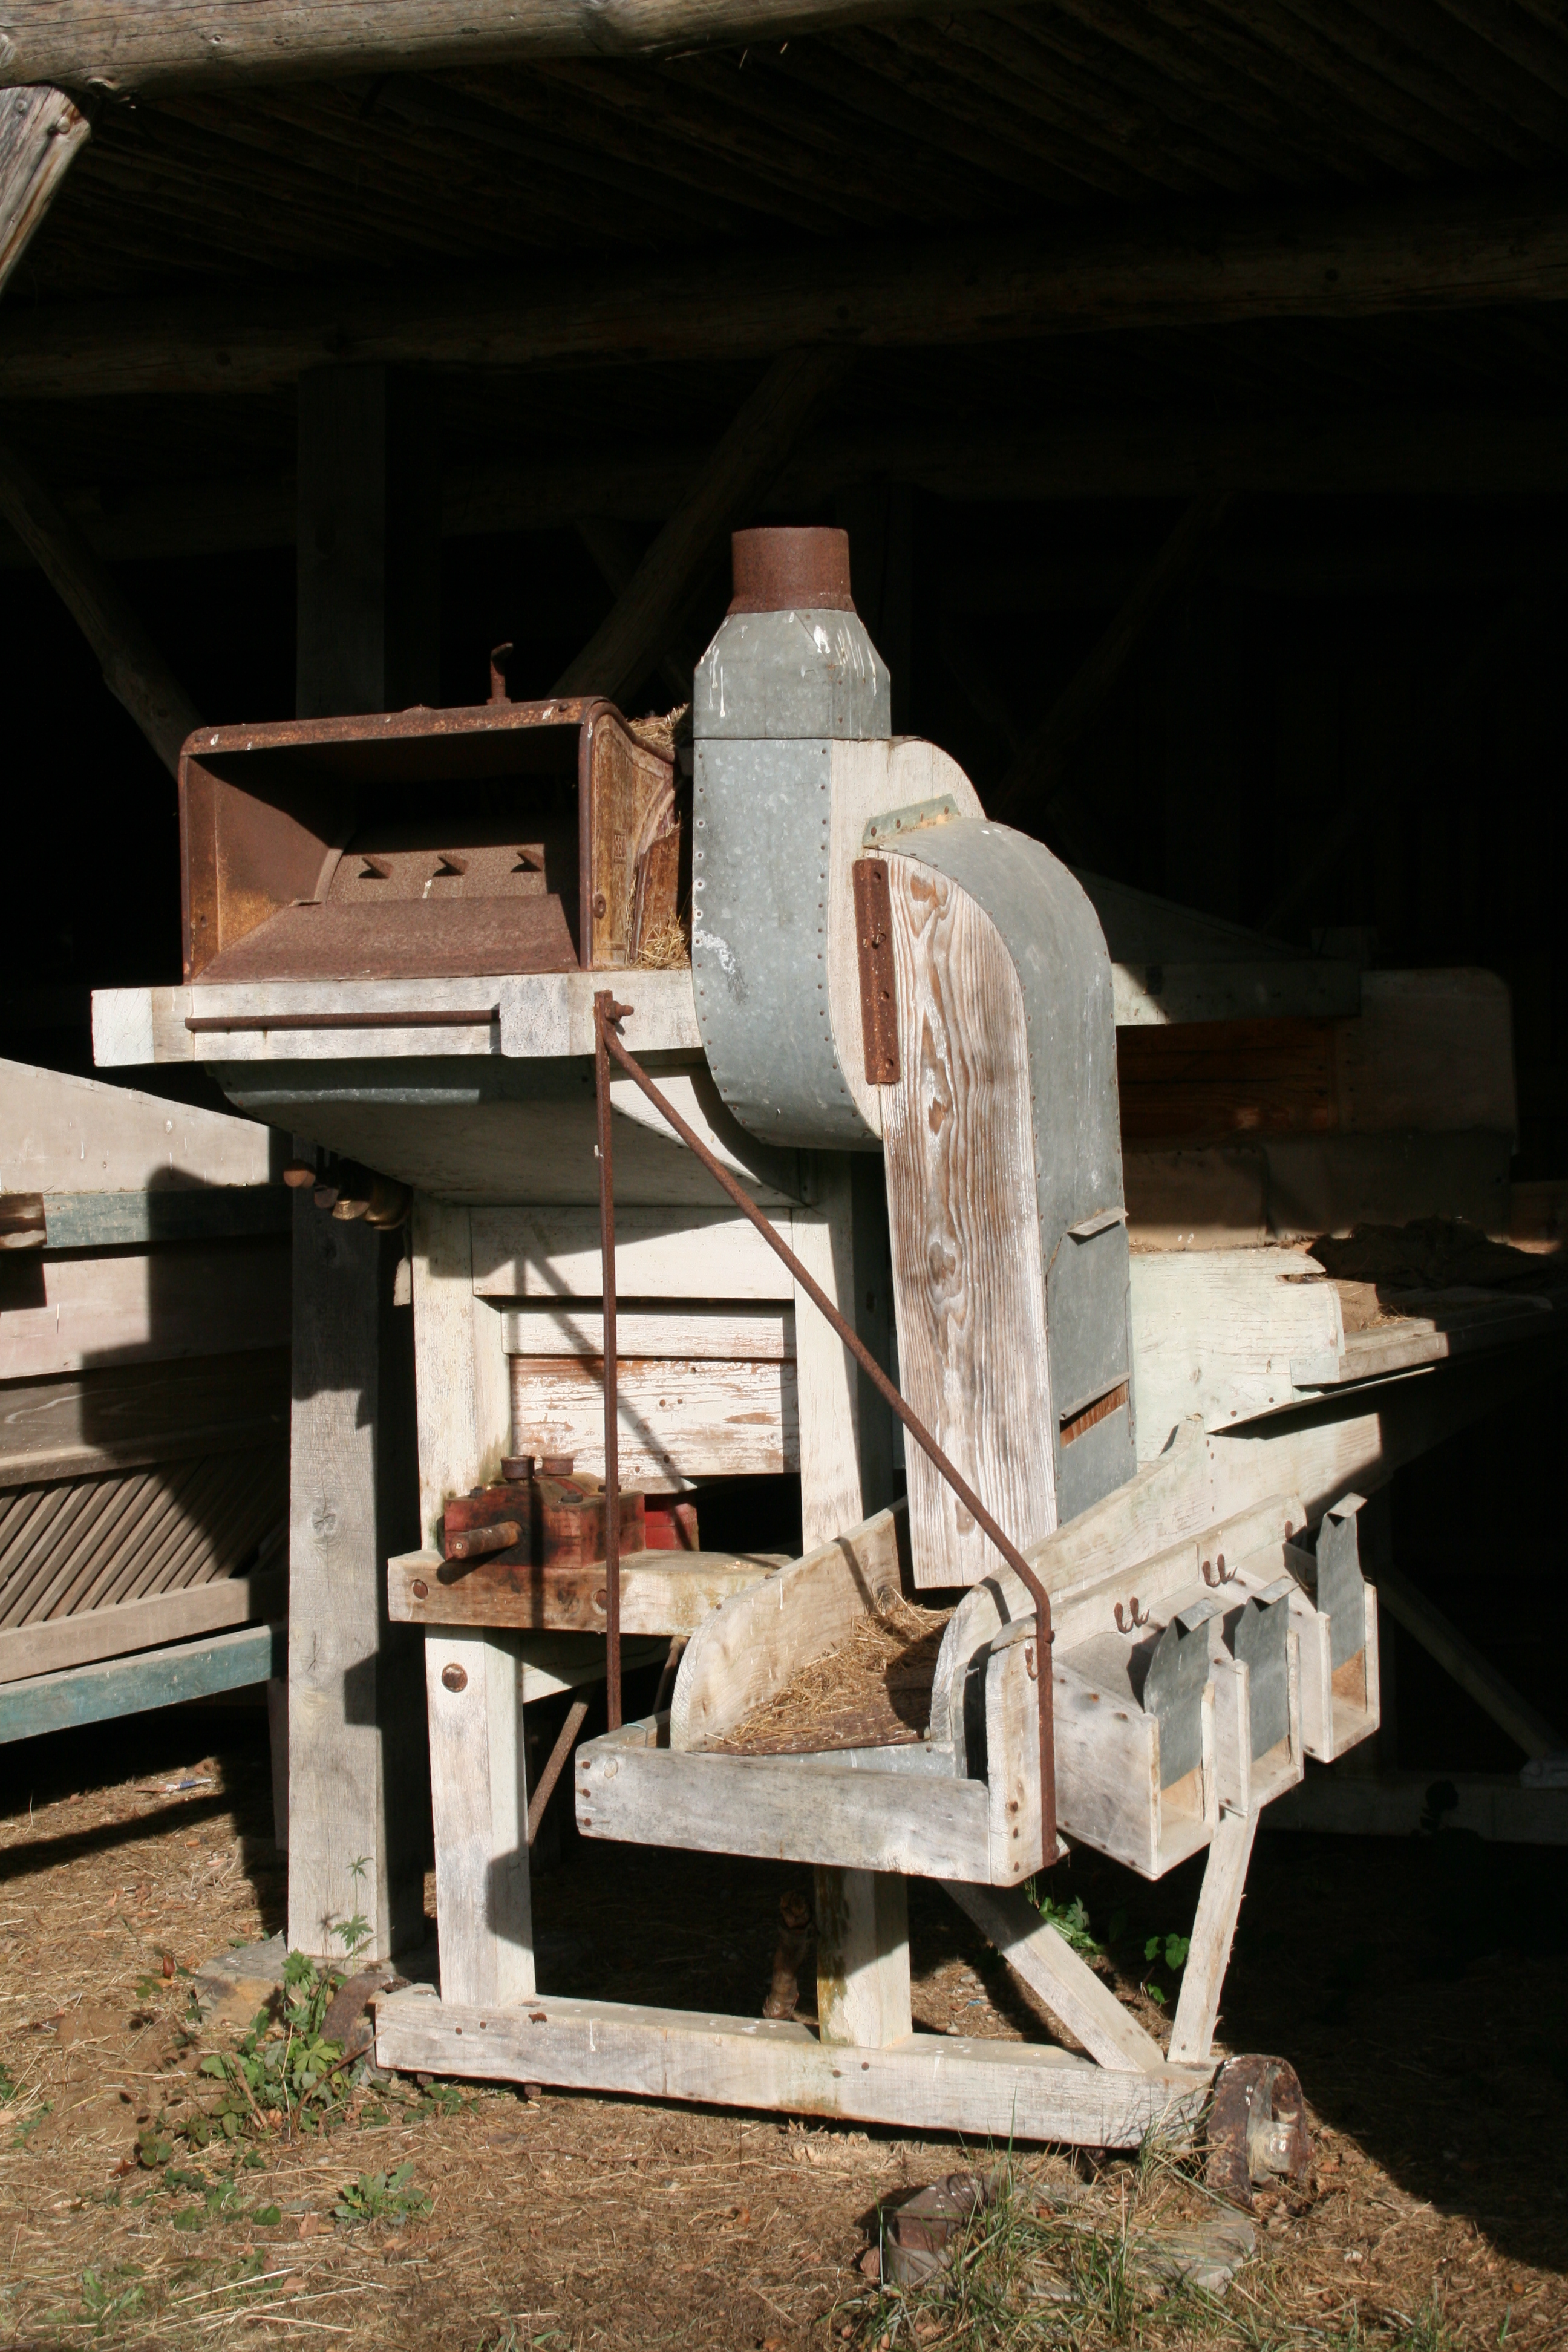 La batteuse d'Andrew Meikle révolutionne l'agriculture. La batteuse permet de séparer les grains de la paille. © Jean-Pol GRANDMONT, CC BY 3.0, Wikimedia Commons